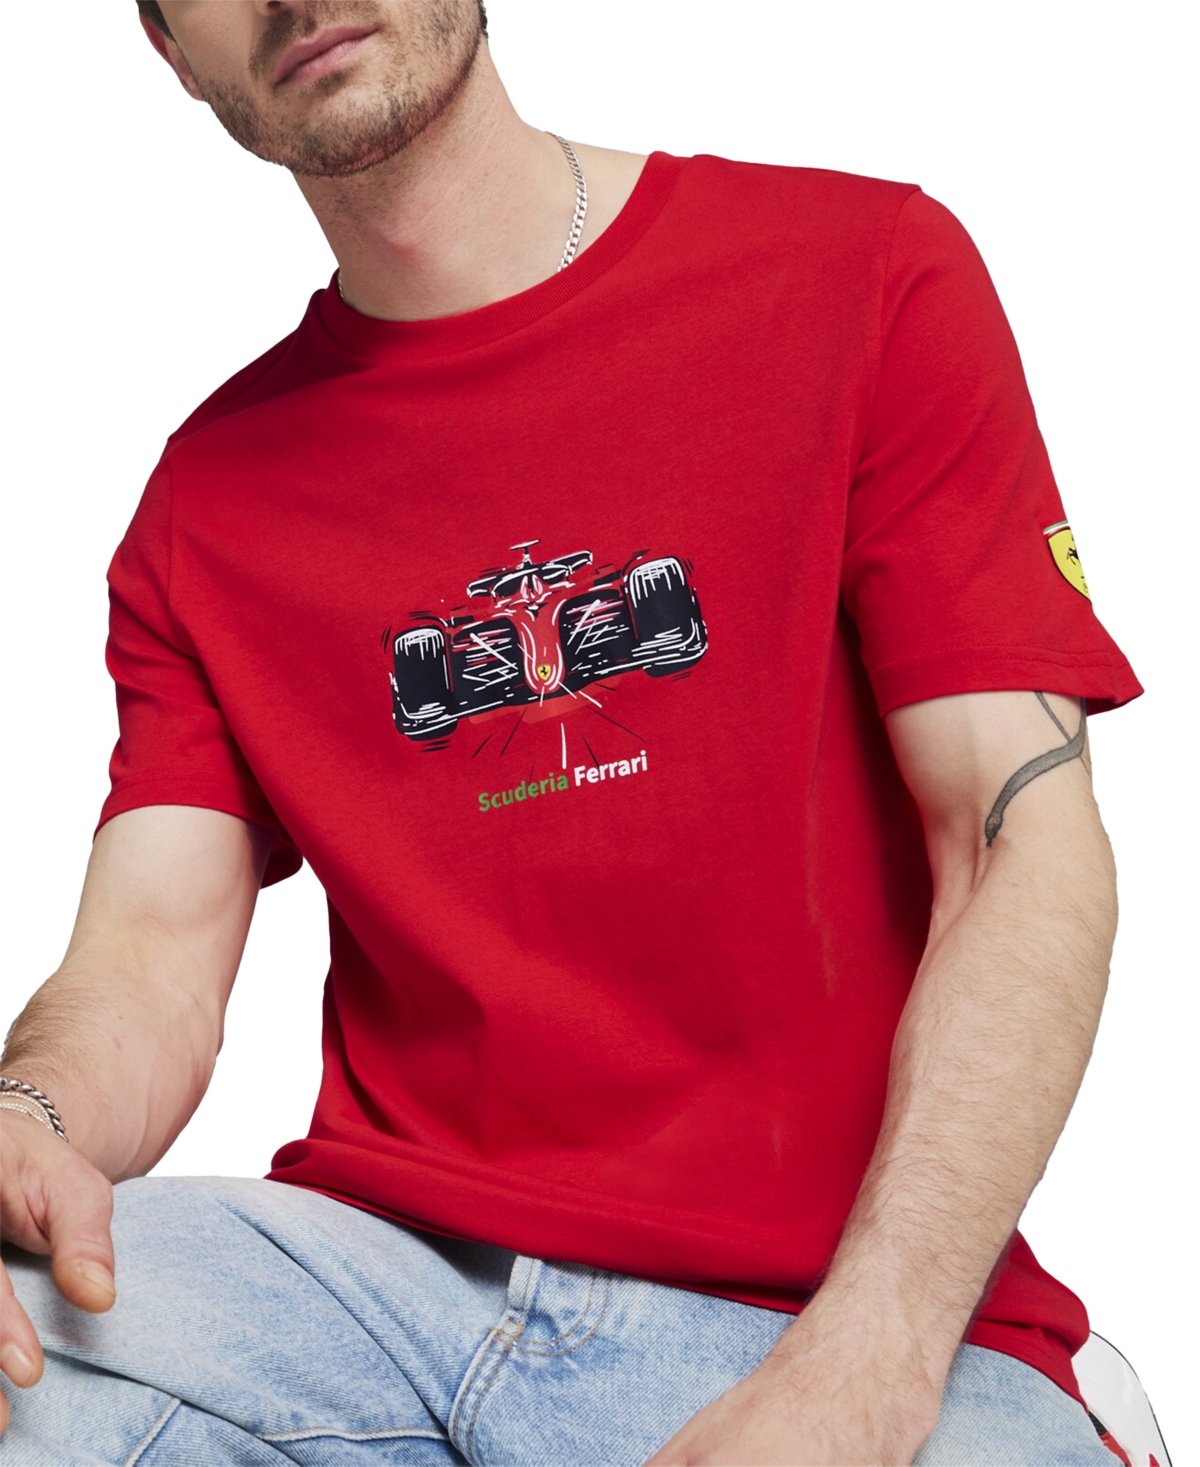 Puma Men's Scuderia Ferrari Regular-fit Formula One Race Car Graphic T-shirt In Rosso Corsa